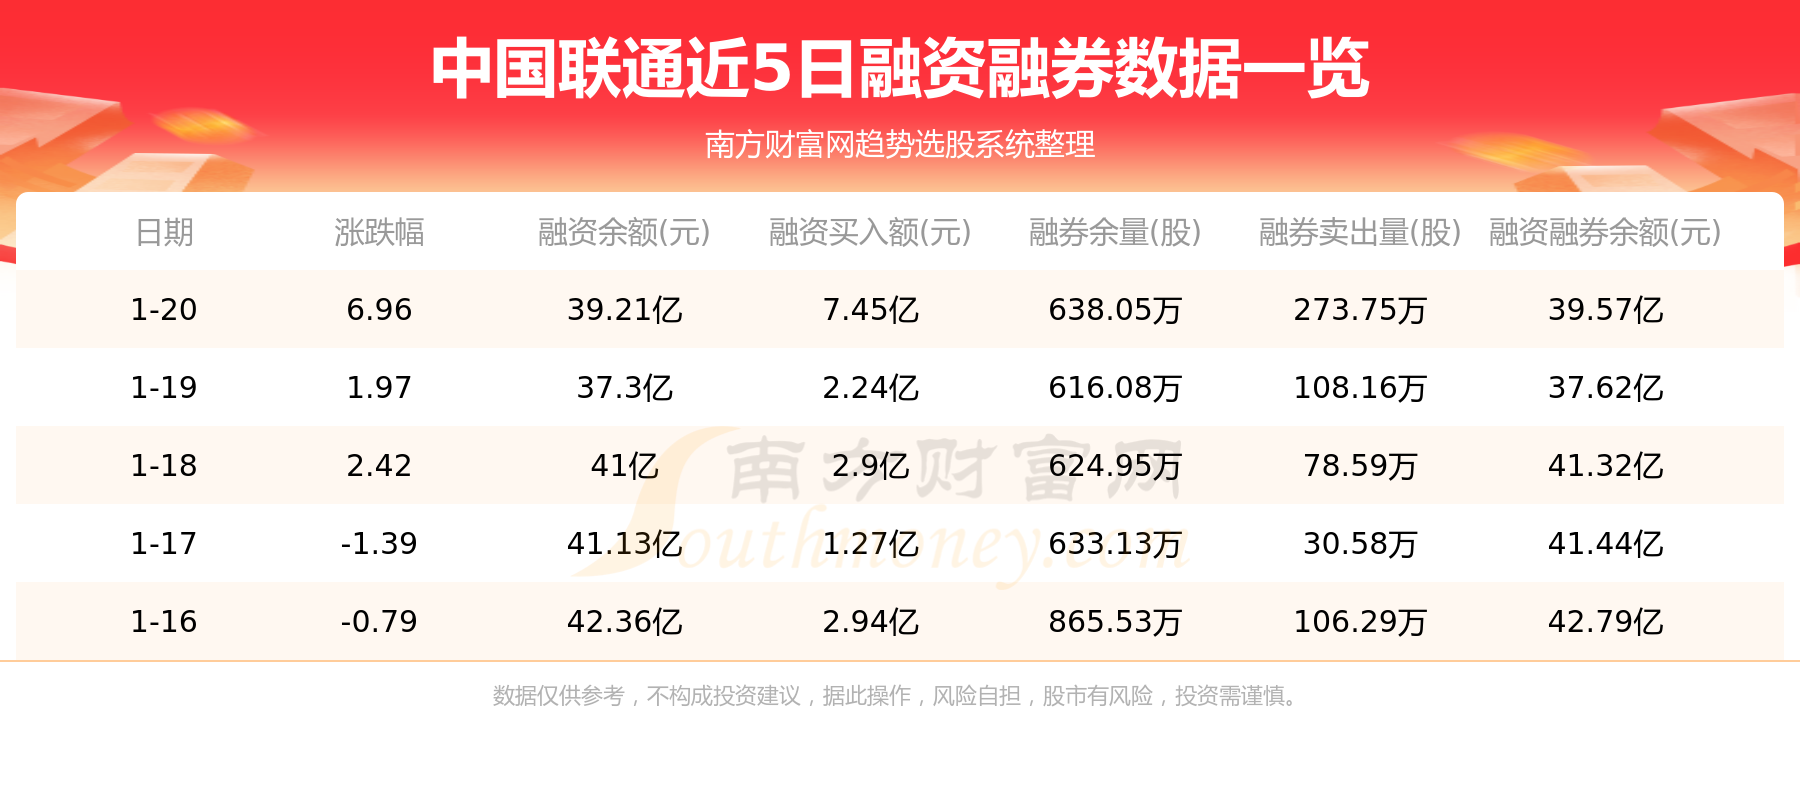 中国联通1月20日主力资金净流入3.11亿元